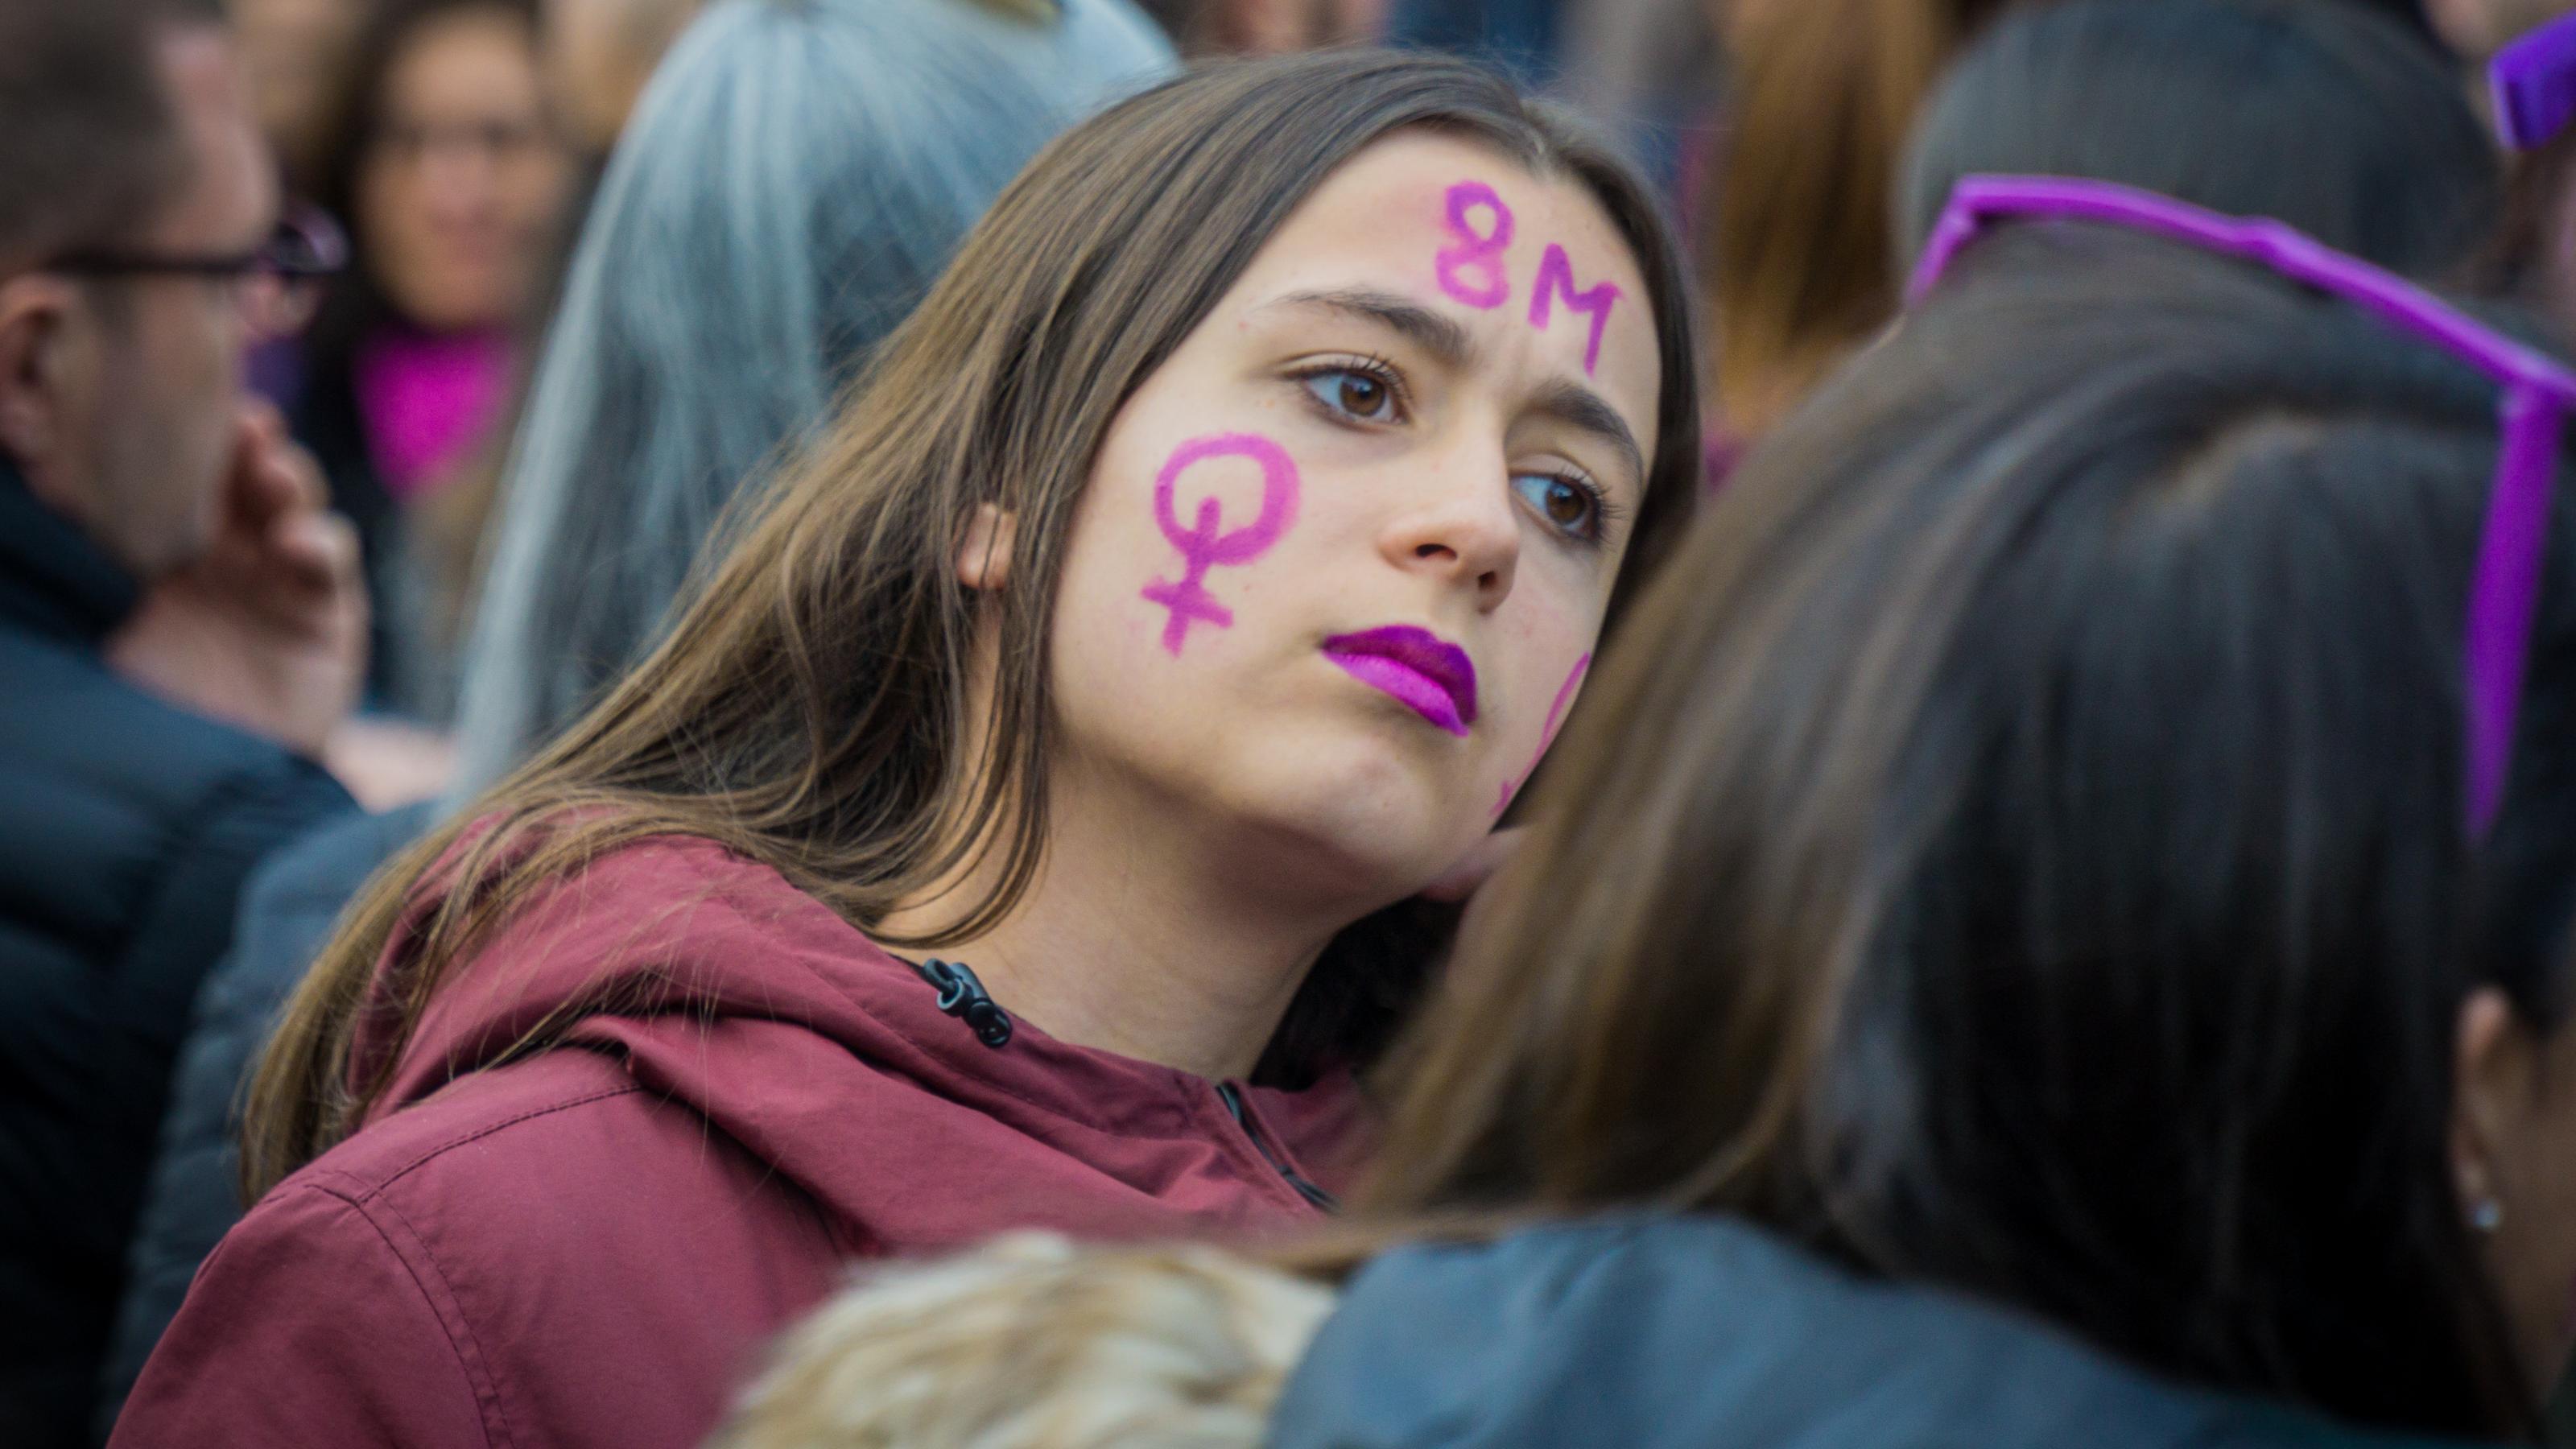 Inmitten einer Menschenmenge blickt eine junge Frau mit Frauenzeichen und 8M auf der Wange und lila geschminkten Lippen entschlossen in die Ferne.